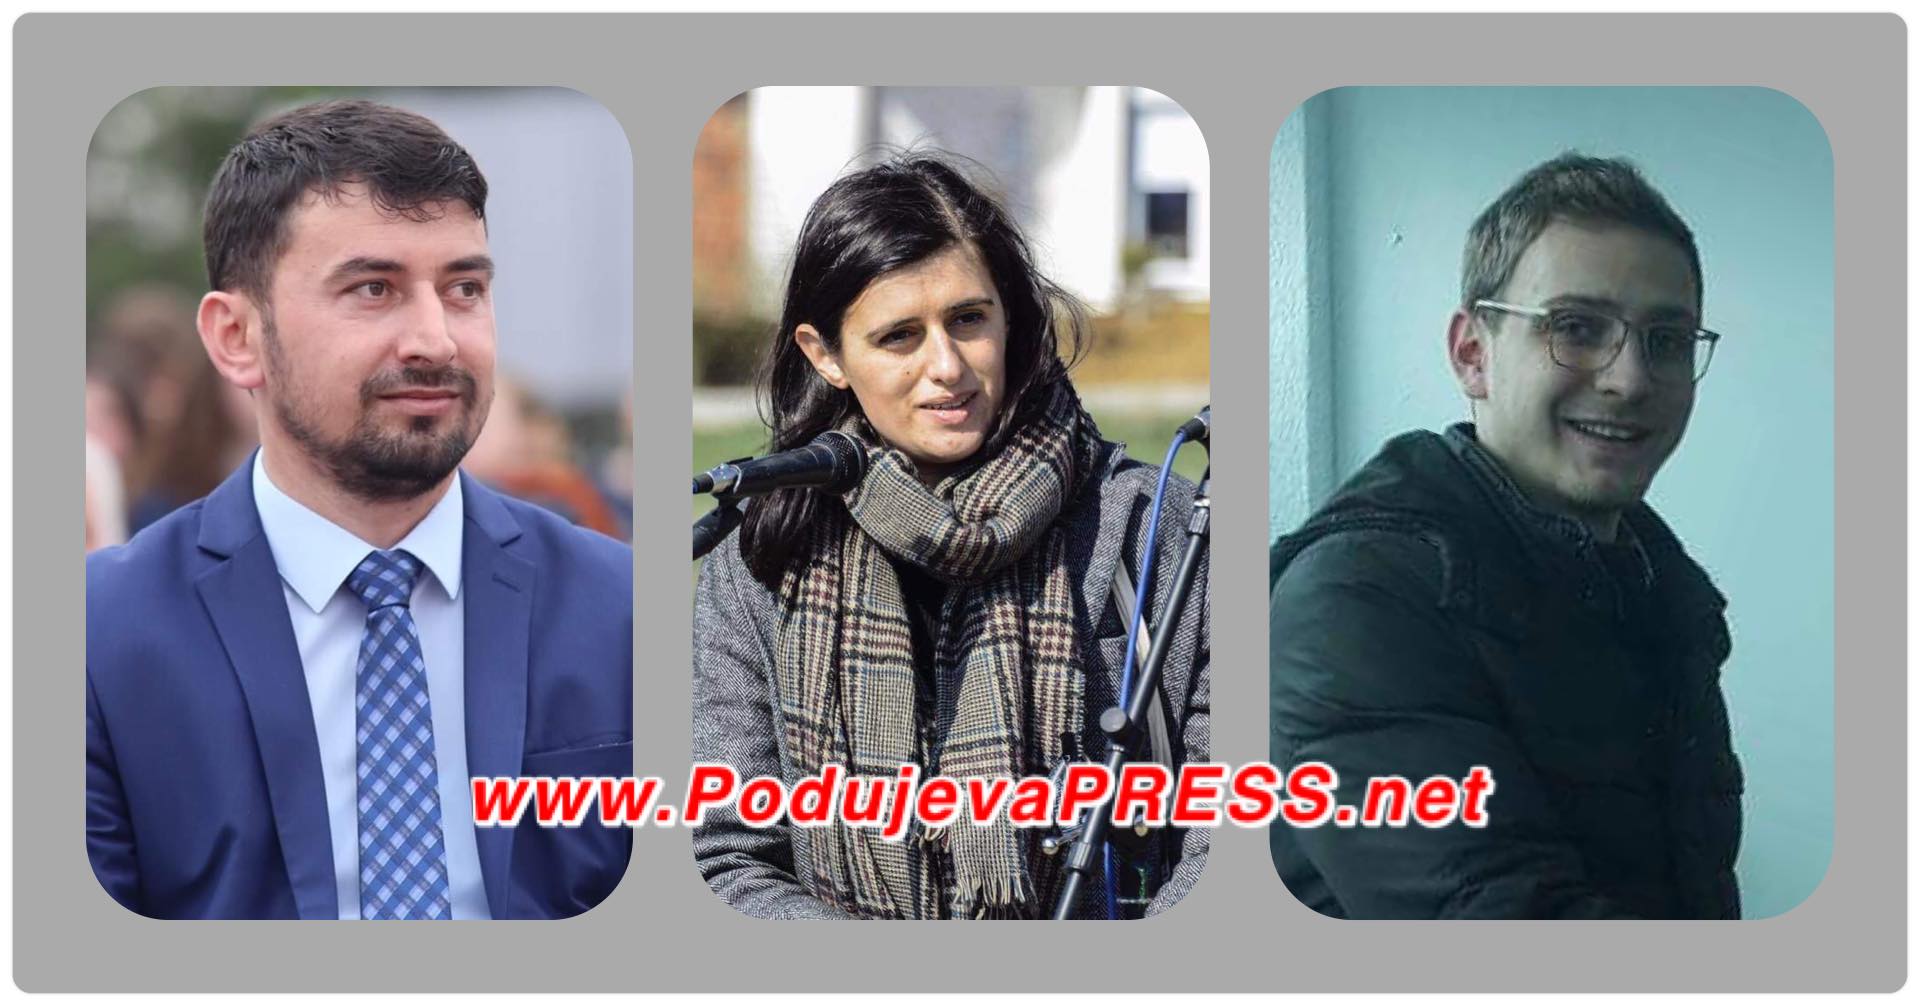  Këta janë kandidatët për deputet të propozuar nga dega e VV-së në Podujevë